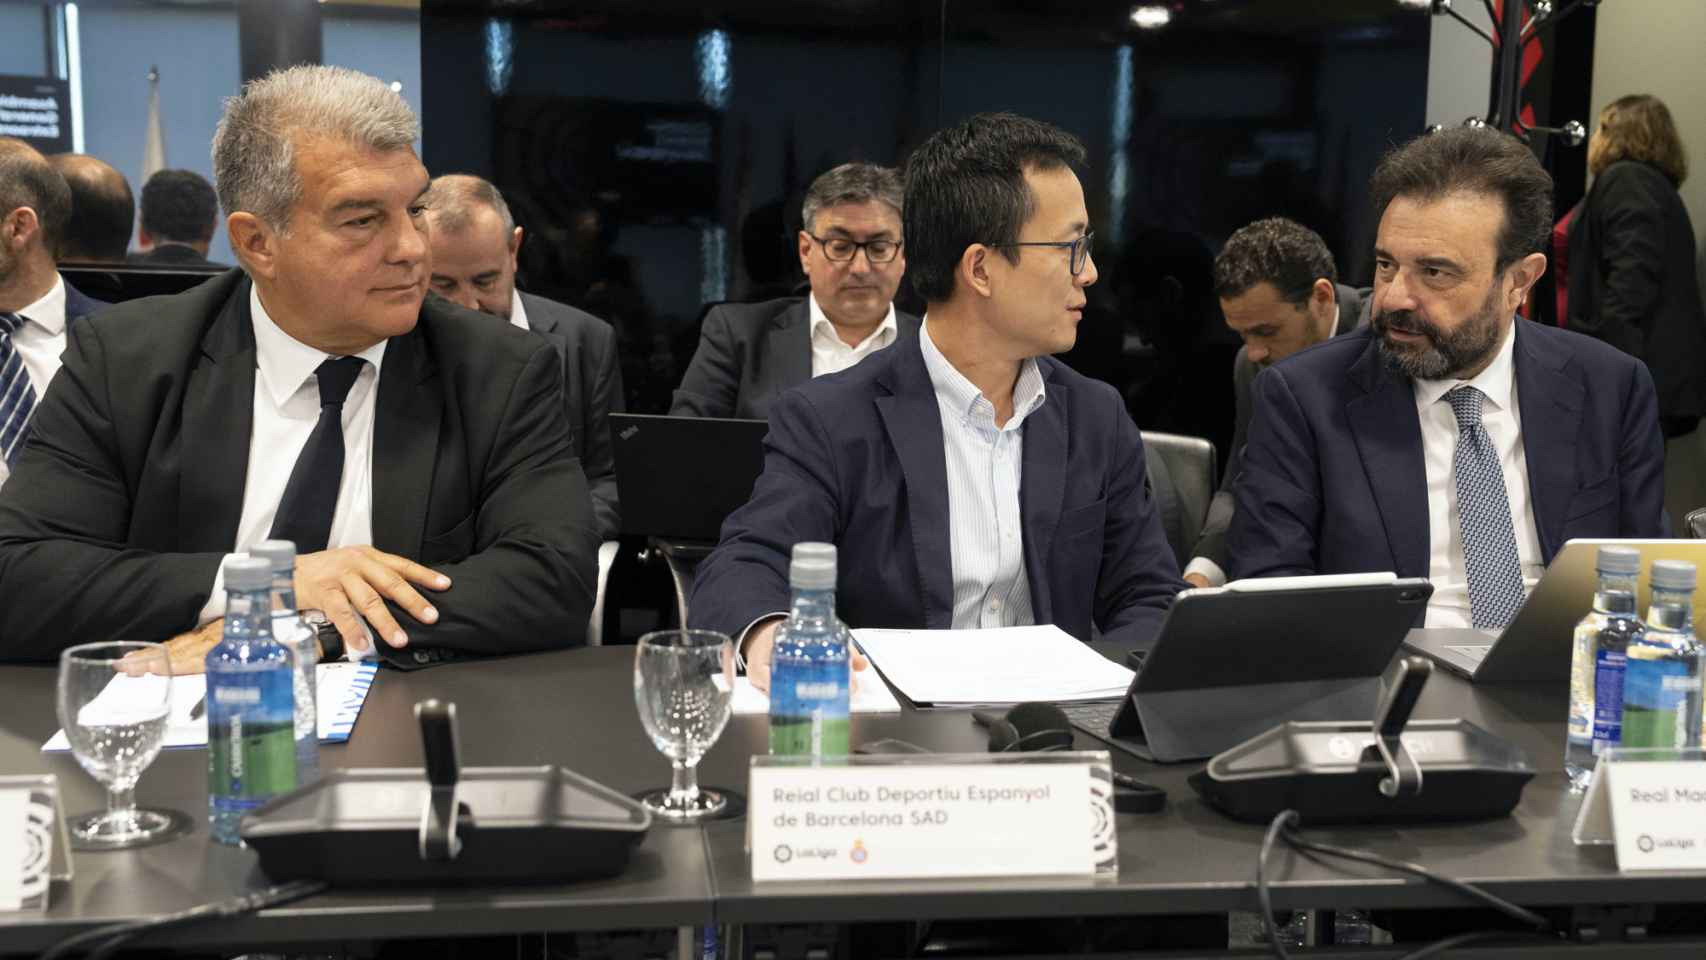 Laporta y José Ángel Sánchez, representantes de Barça y Real Madrid, sentados prácticamente al lado / EFE